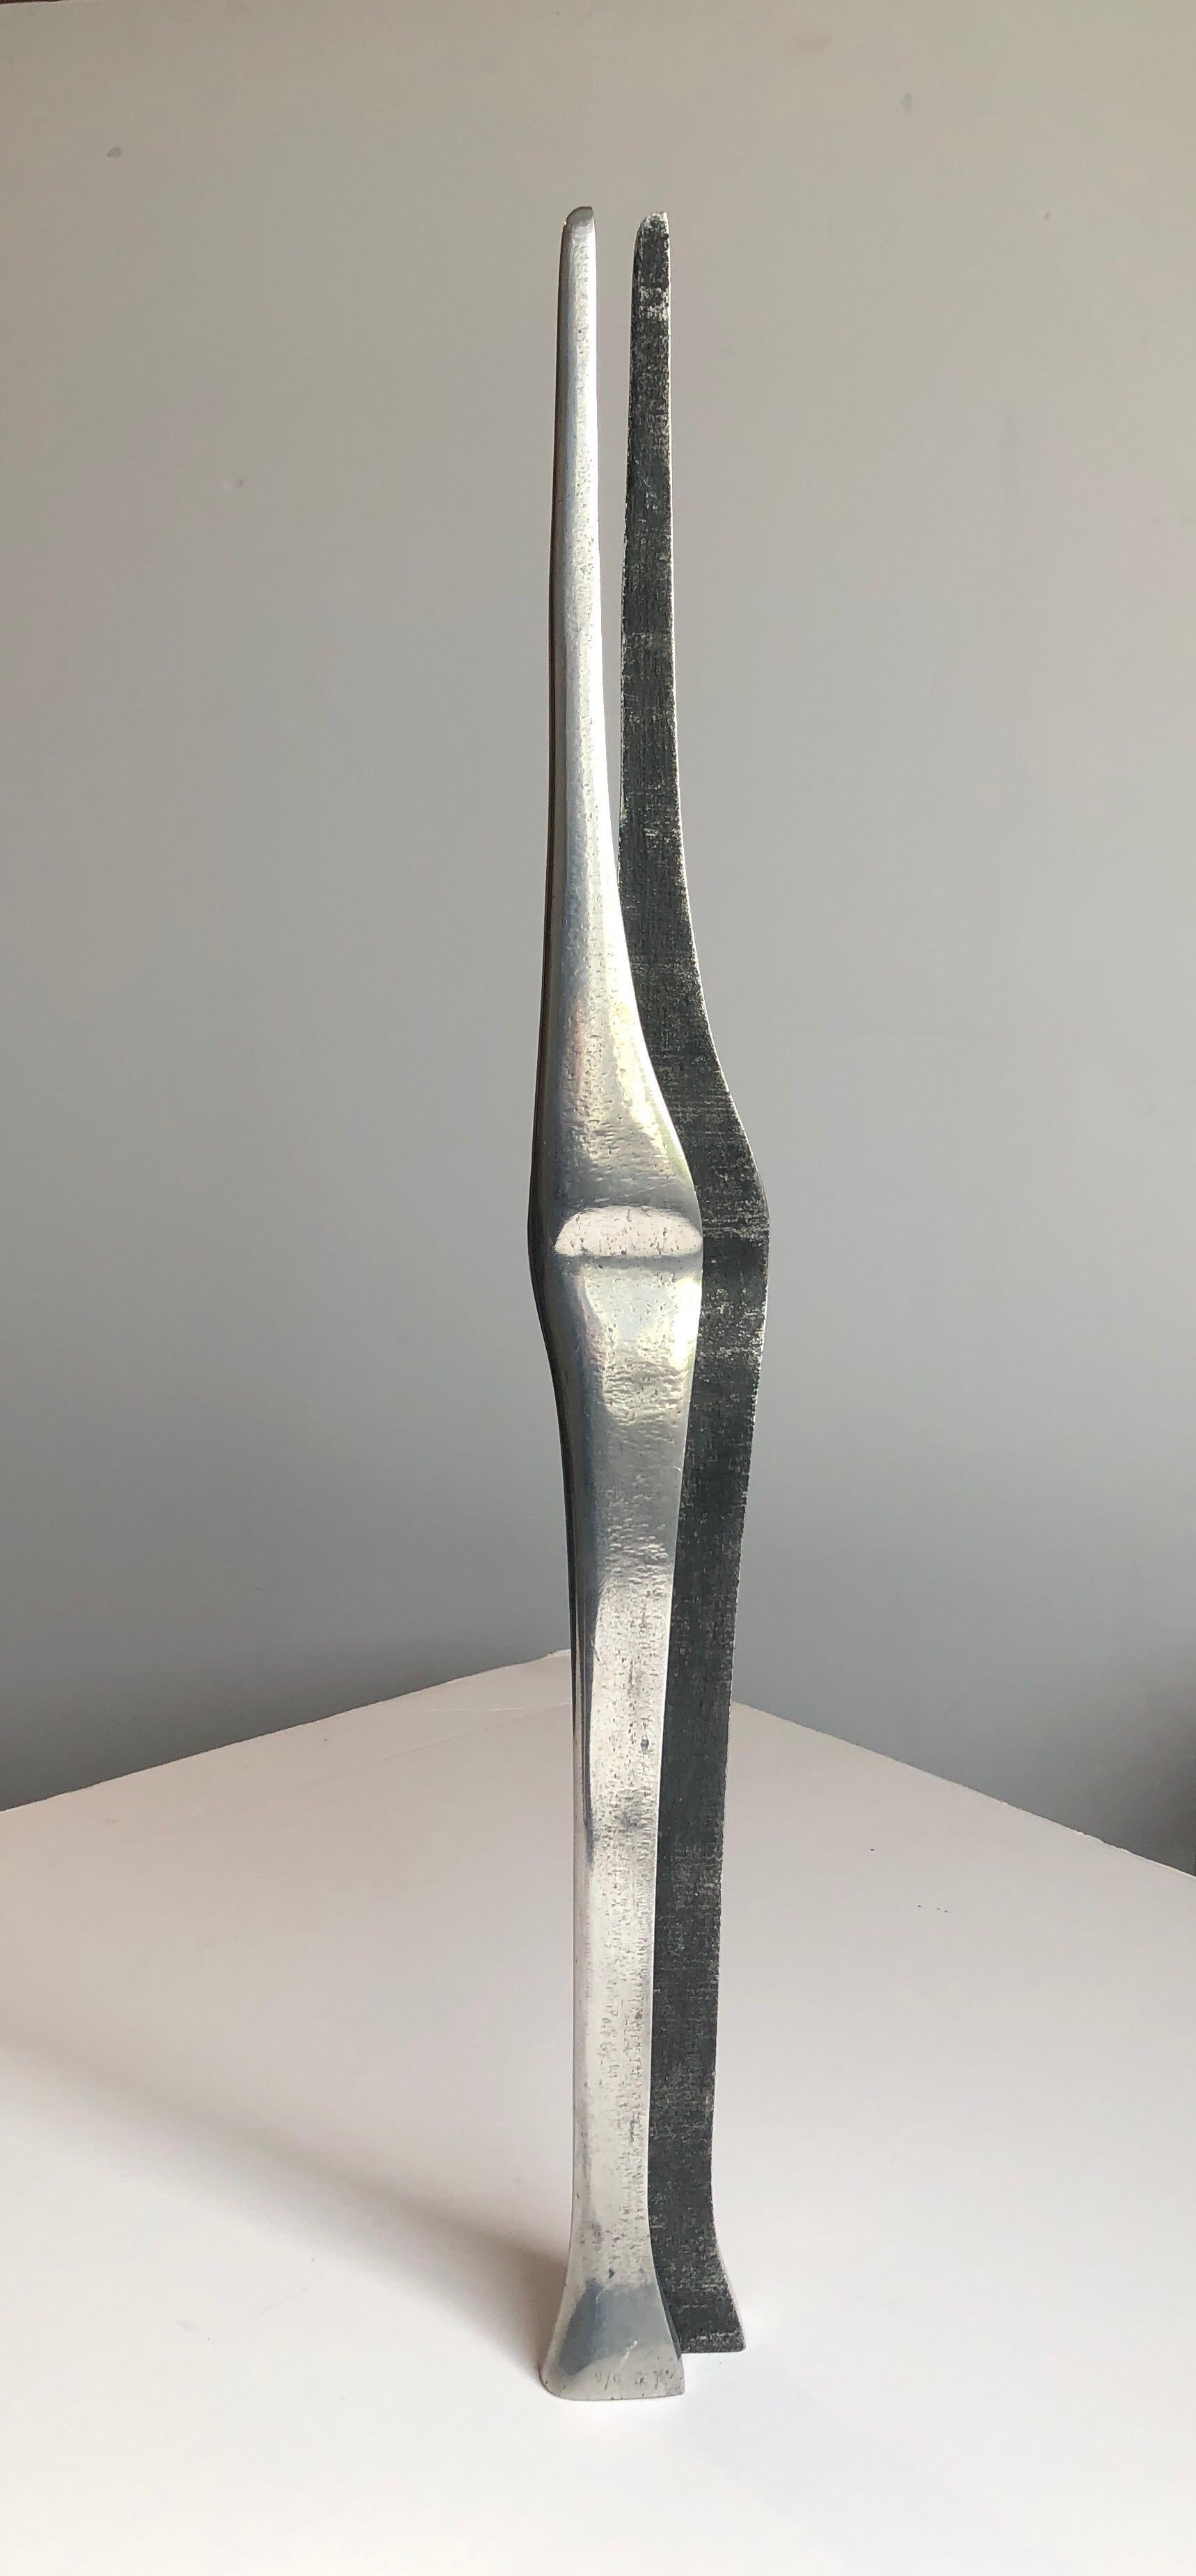 Eine Serie von 2 Skulpturen. Liebespaar, Mann und Frau, aneinander geschmiegt. Schlichte, minimalistische Mod-Skulptur.
polierte Oberfläche auf einer Seite. nicht sicher, ob diese sind stell oder Aluminium. sie sind gegossen und in Hebräisch mit